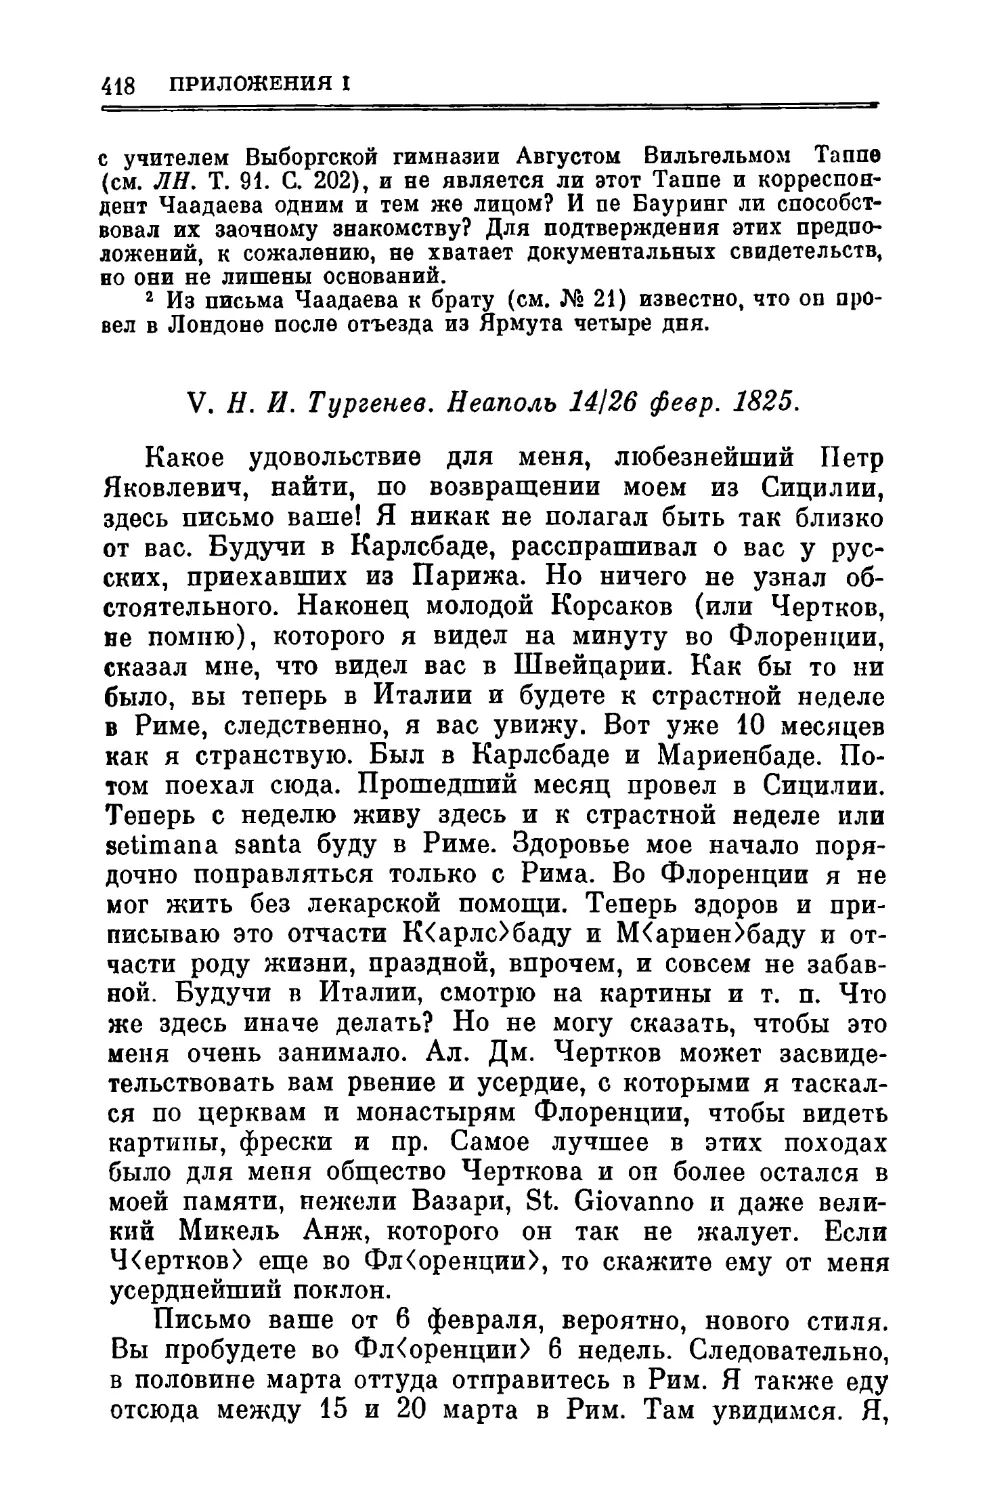 V. Тургенев Н.И. 14/26.11.1825